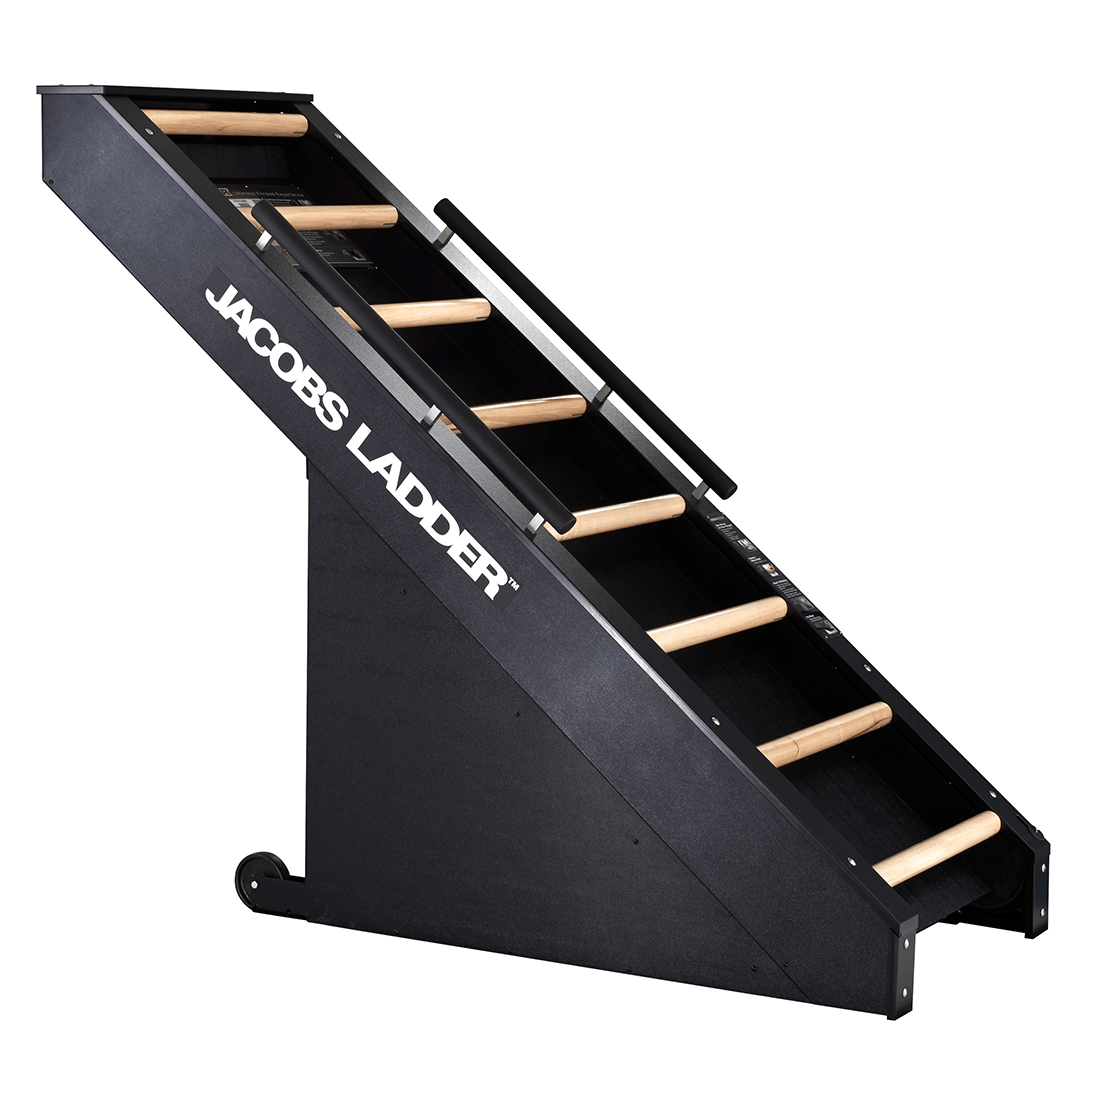 Brug Jacobs Ladder Klatremaskine til en forbedret oplevelse